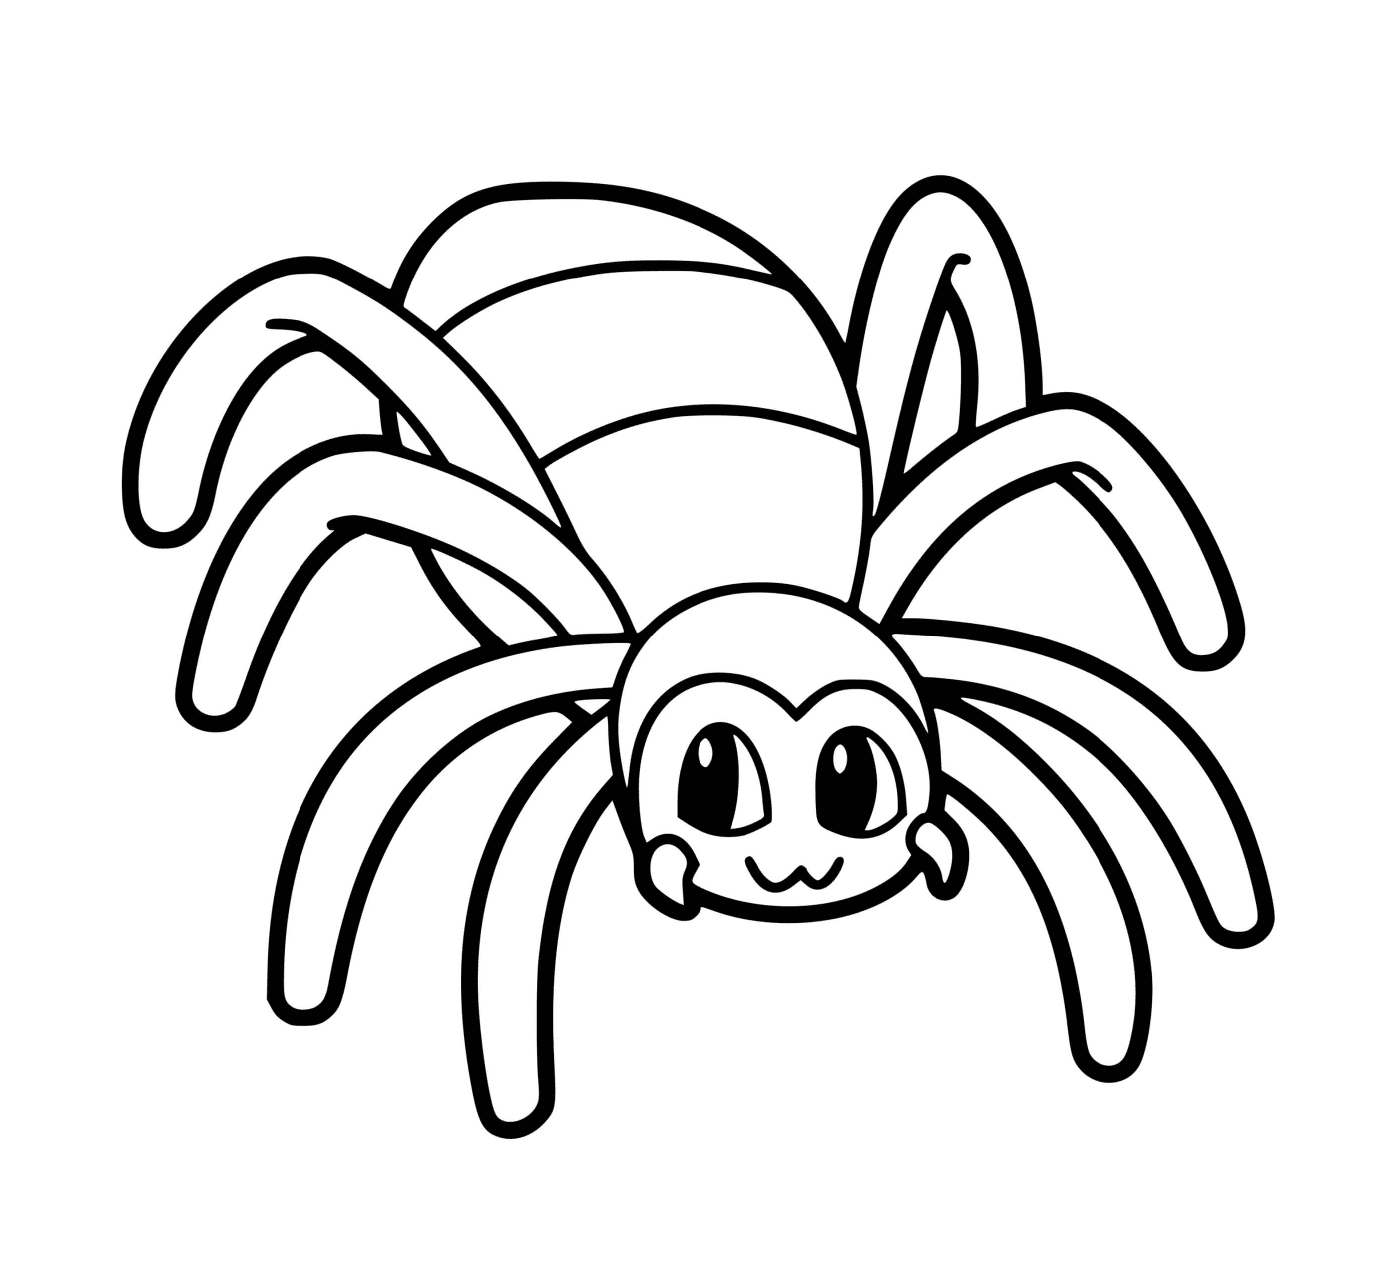  一个蜘蛛 